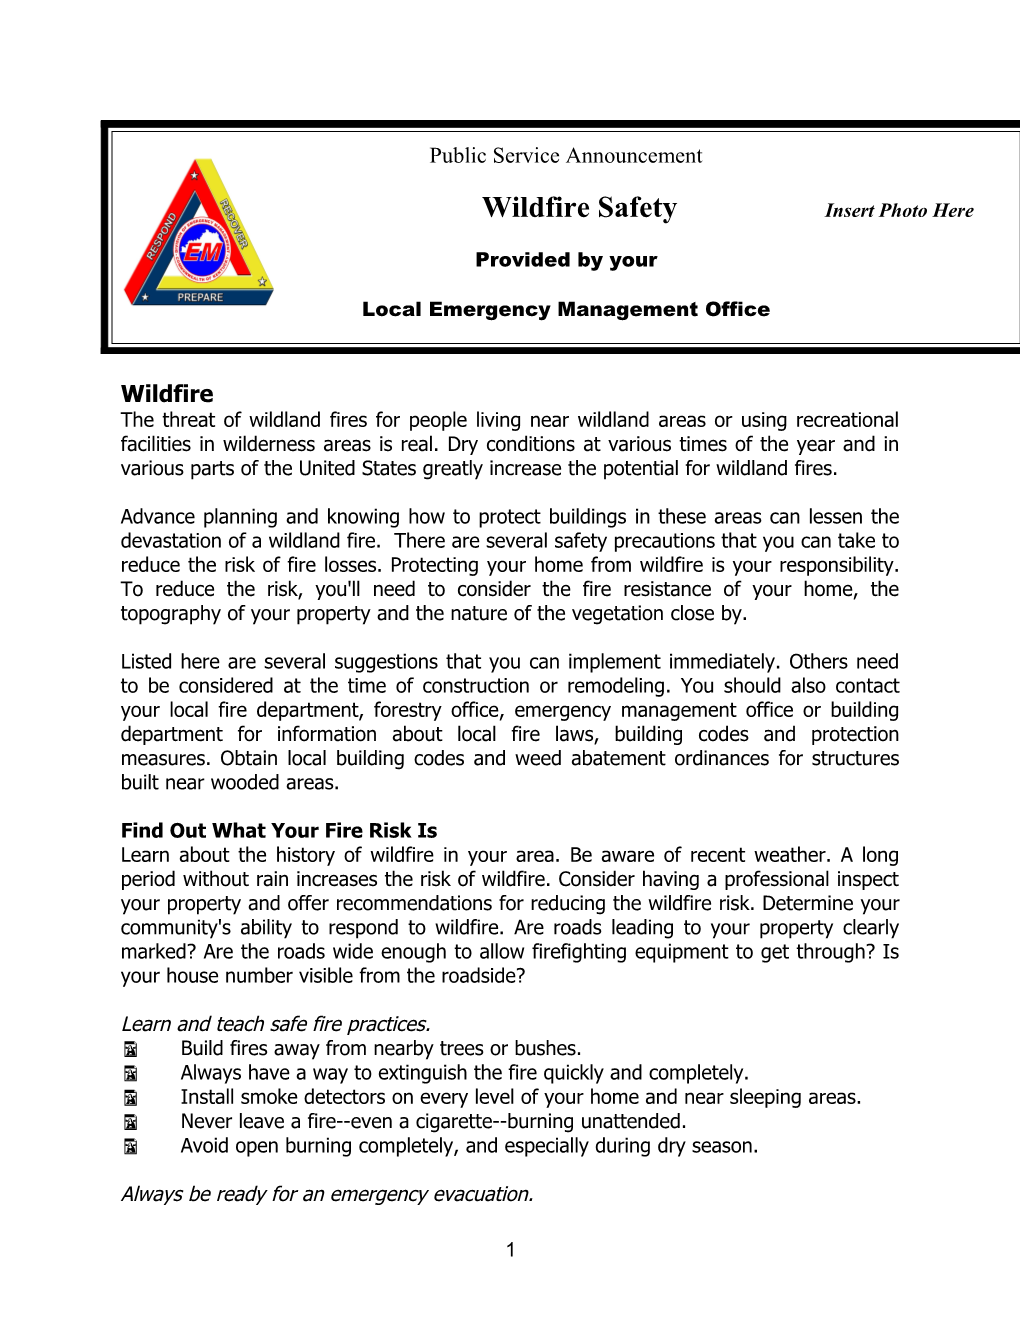 Wildfire Safety Week